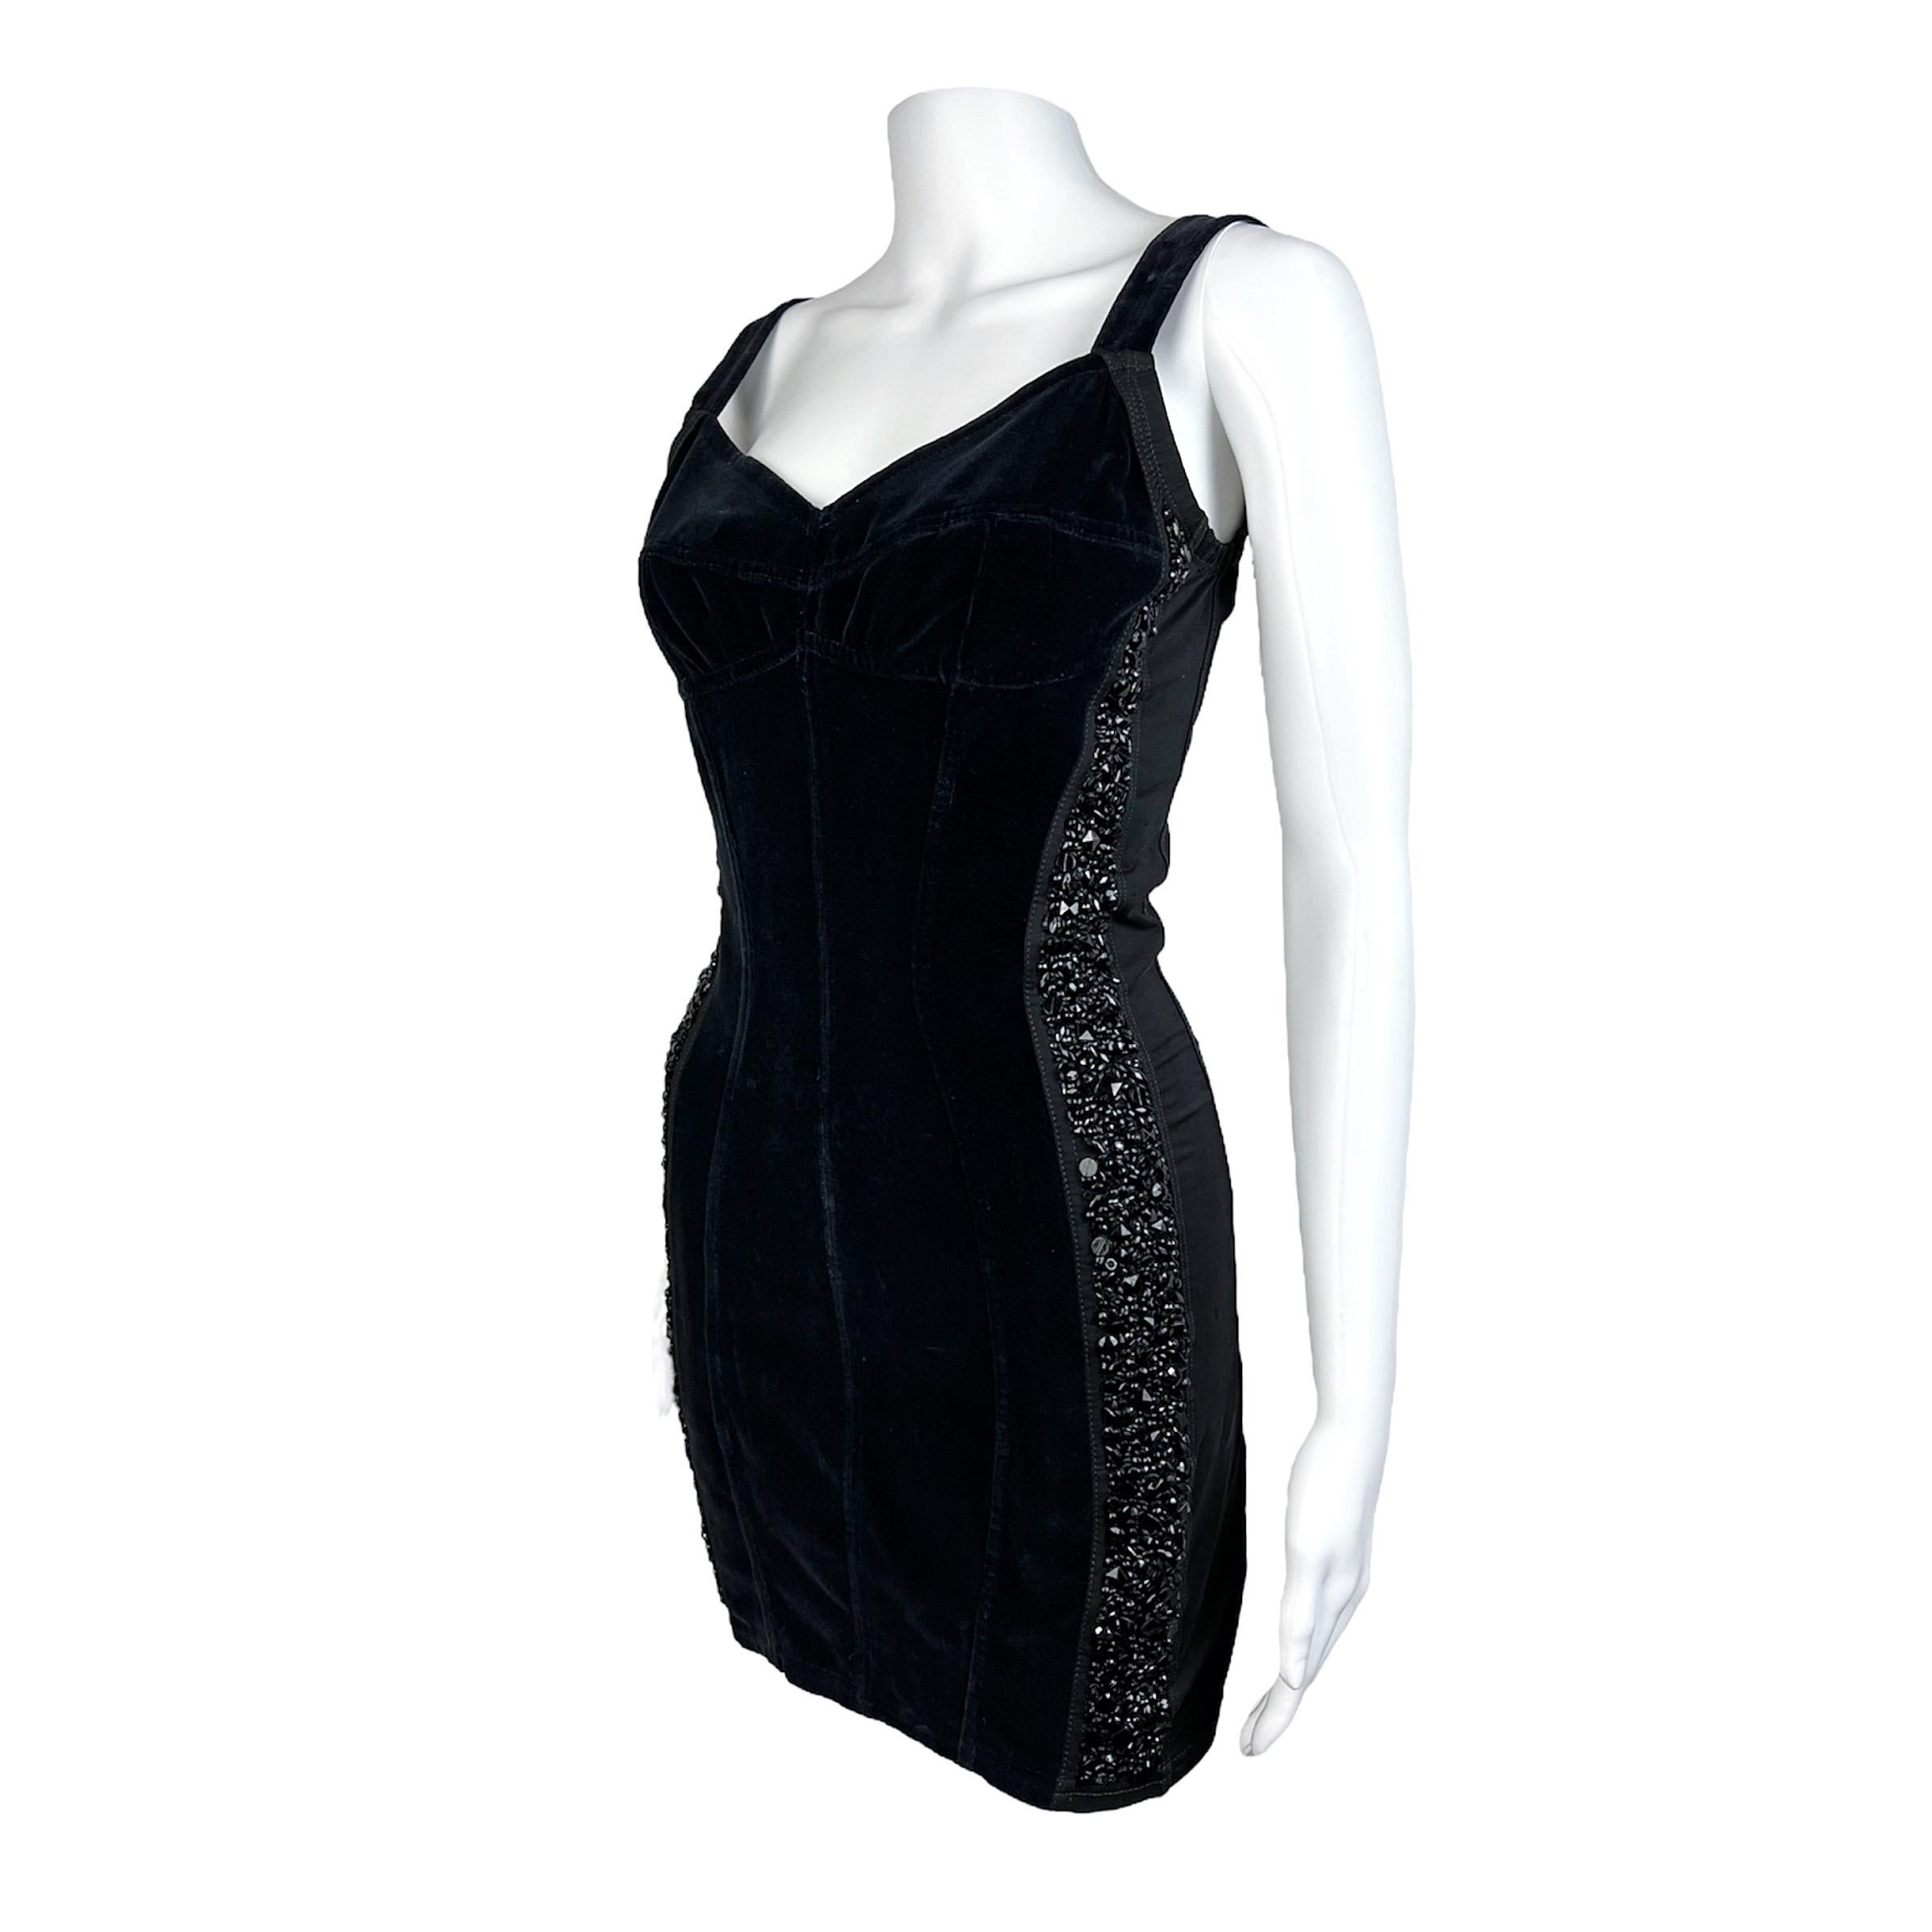 Superbe mini robe noire Dolce & Gabbana du début des années 90 avec des panneaux en cristal de chaque côté. La robe est faite d'un magnifique velours et d'empiècements extensibles. La forme est ajustée au corps et s'inspire directement de la